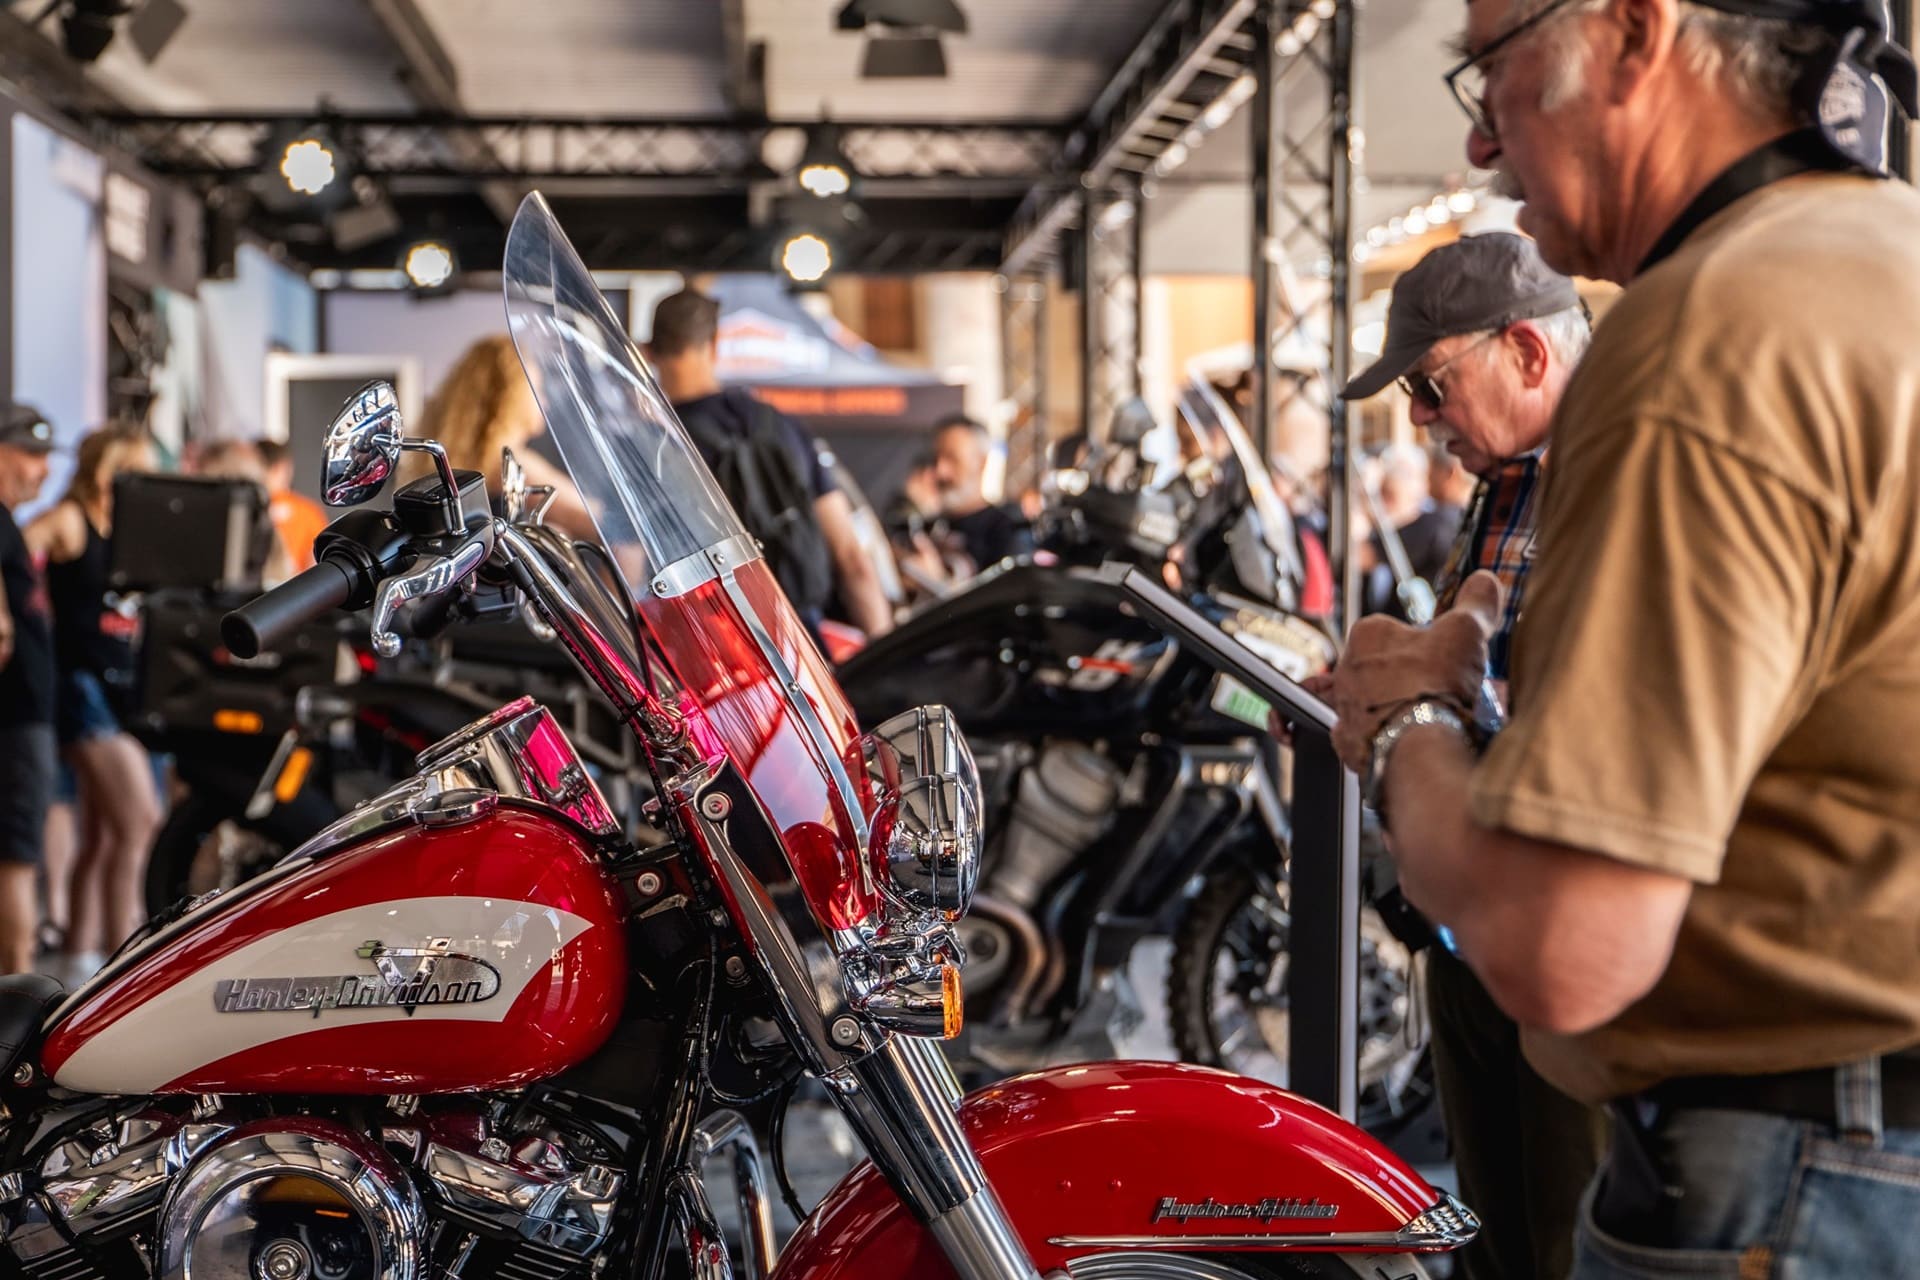 El Rally Europeo Harley Owners Group acoge a más de 100.000 aficionados en su 30ª edición